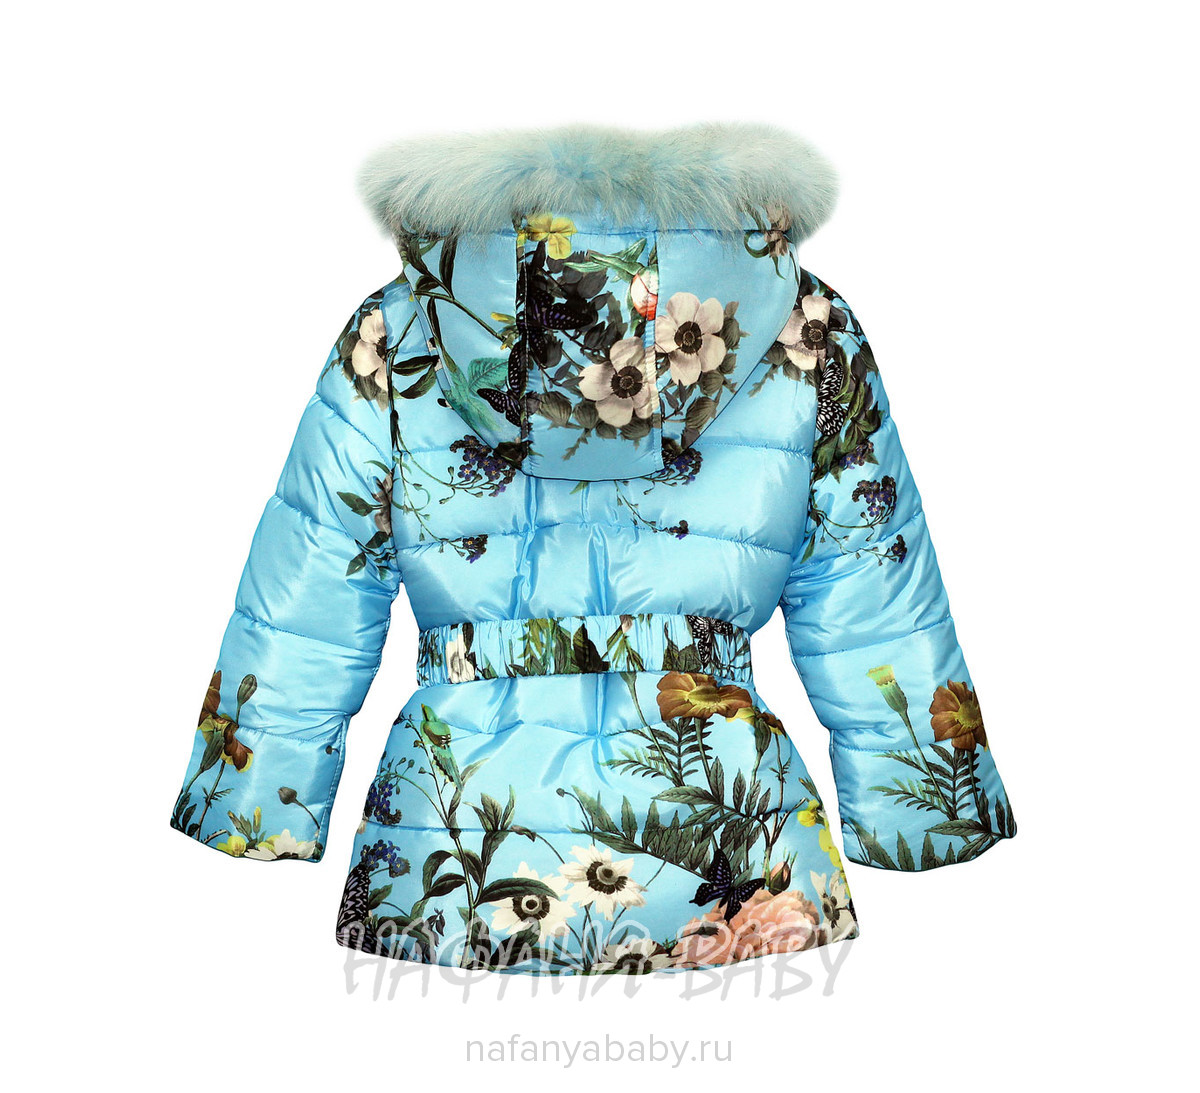 Детский зимний костюм YXFS, купить в интернет магазине Нафаня. арт: 1615.